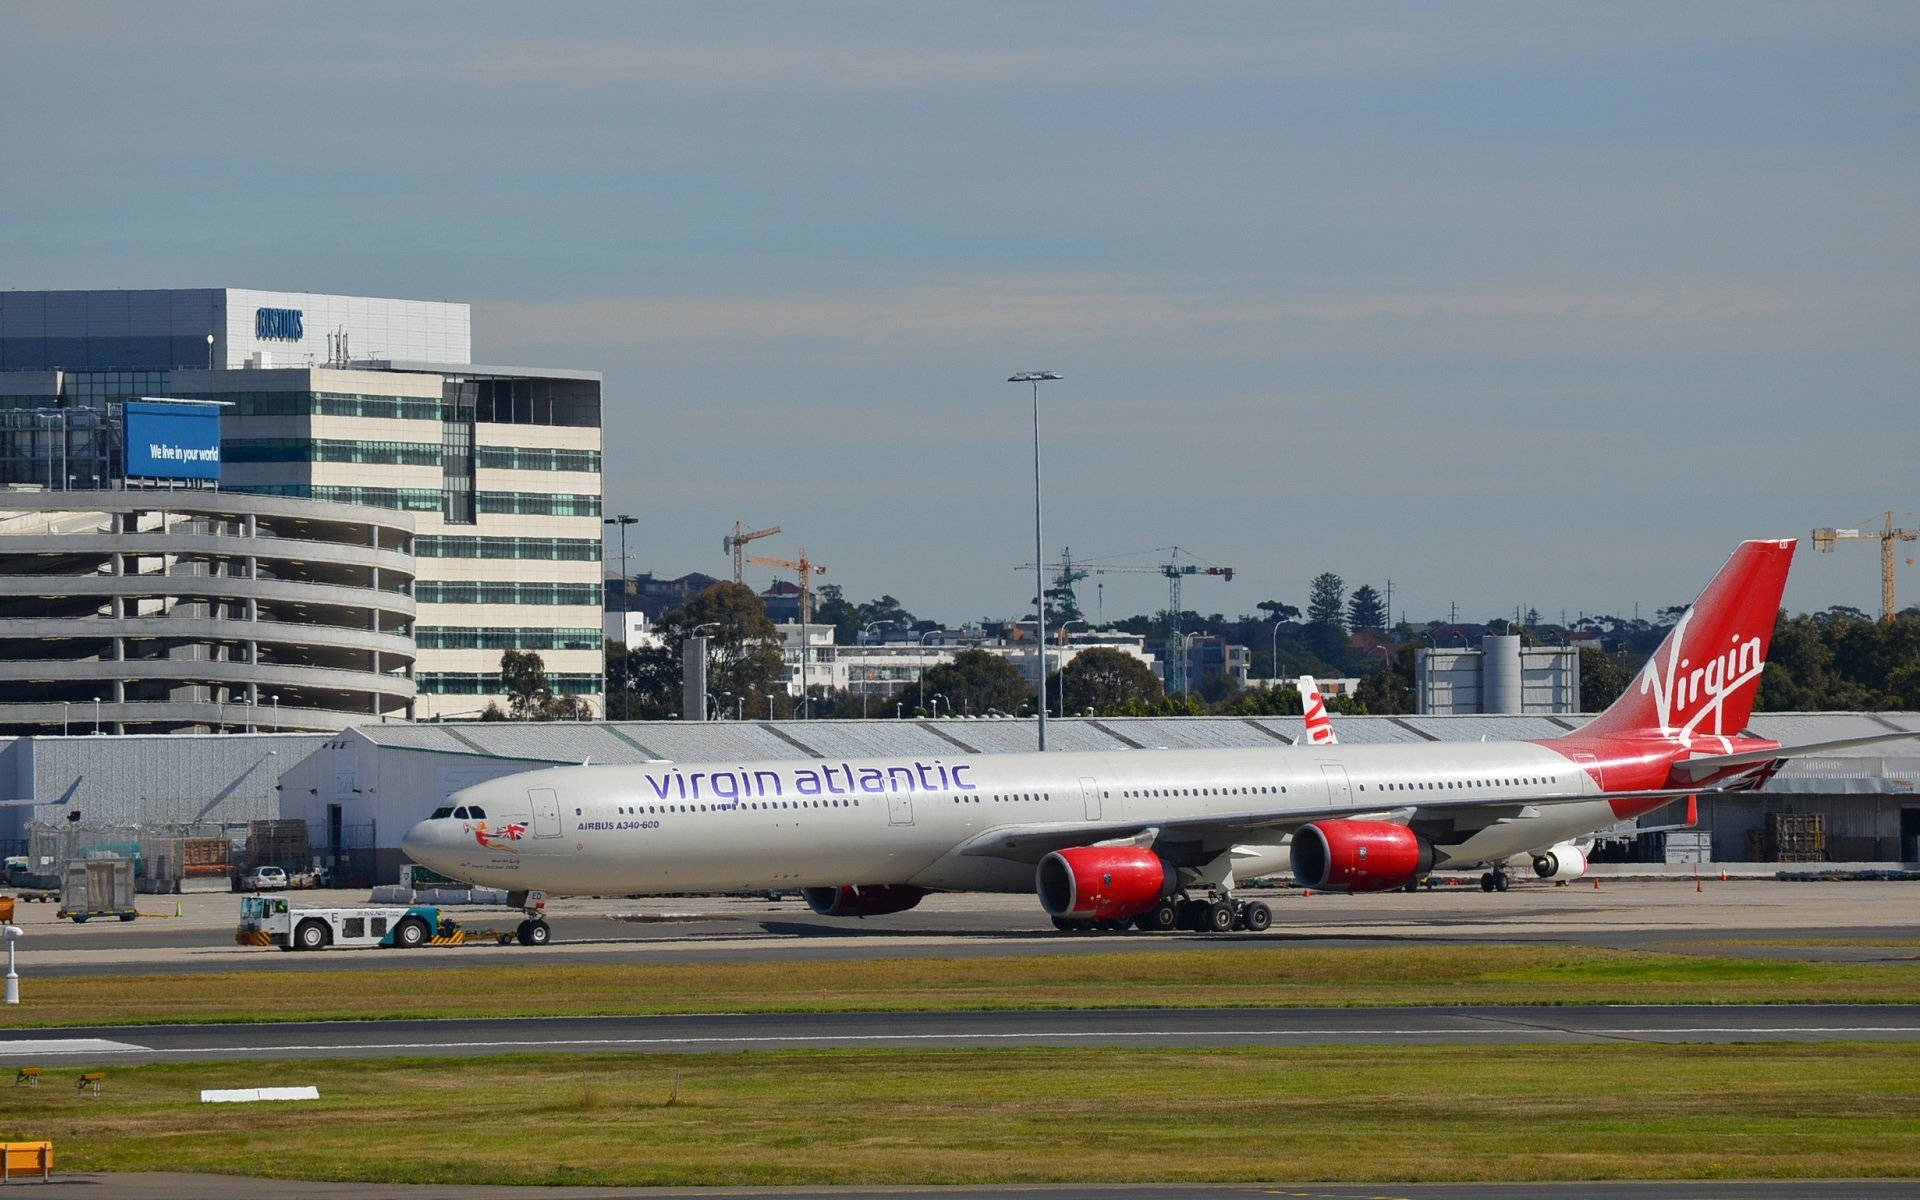 Virginatlantic Flugzeug Bereitet Sich Aufs Boarding Vor Wallpaper